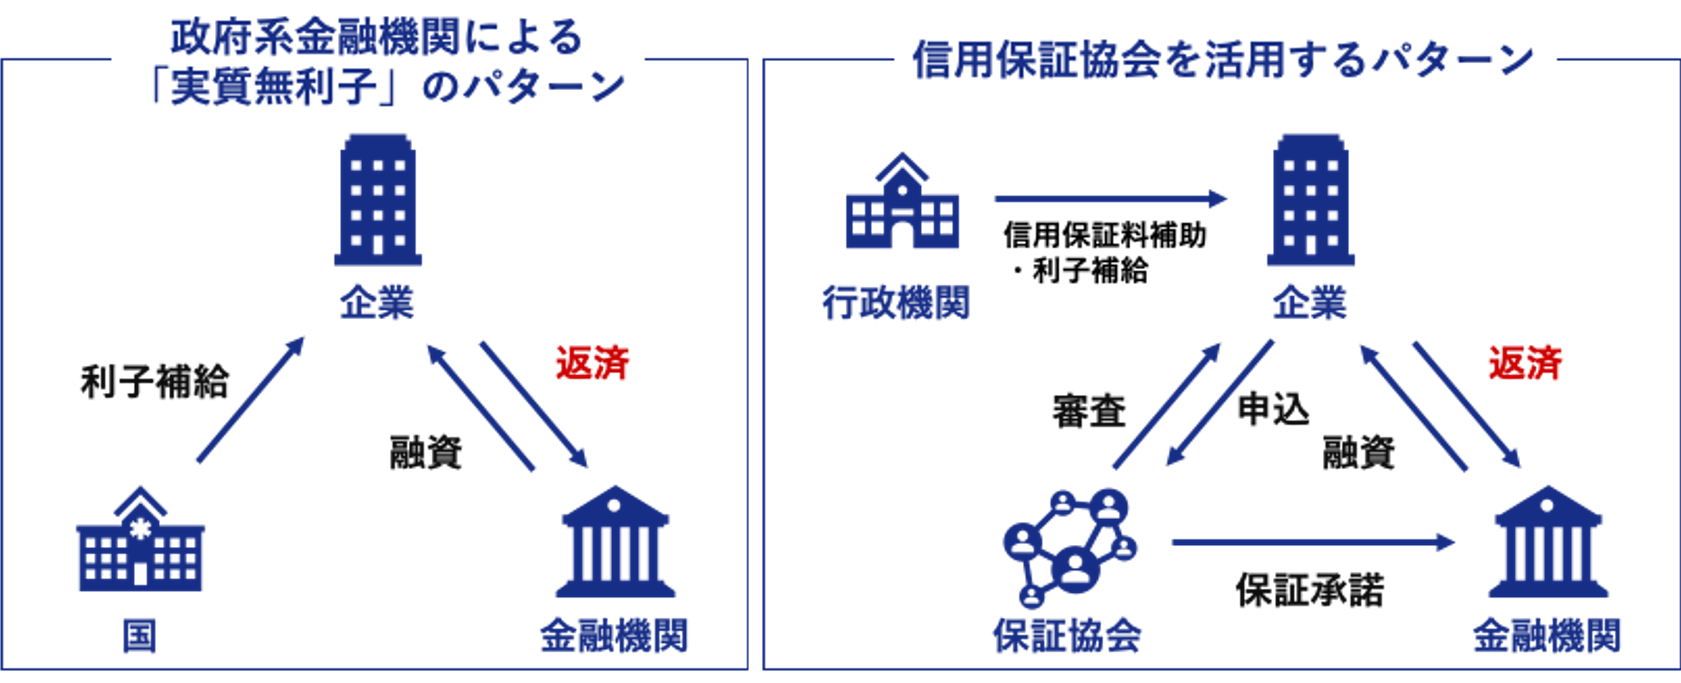 融資 金融 公庫 日本 コロナ 政策